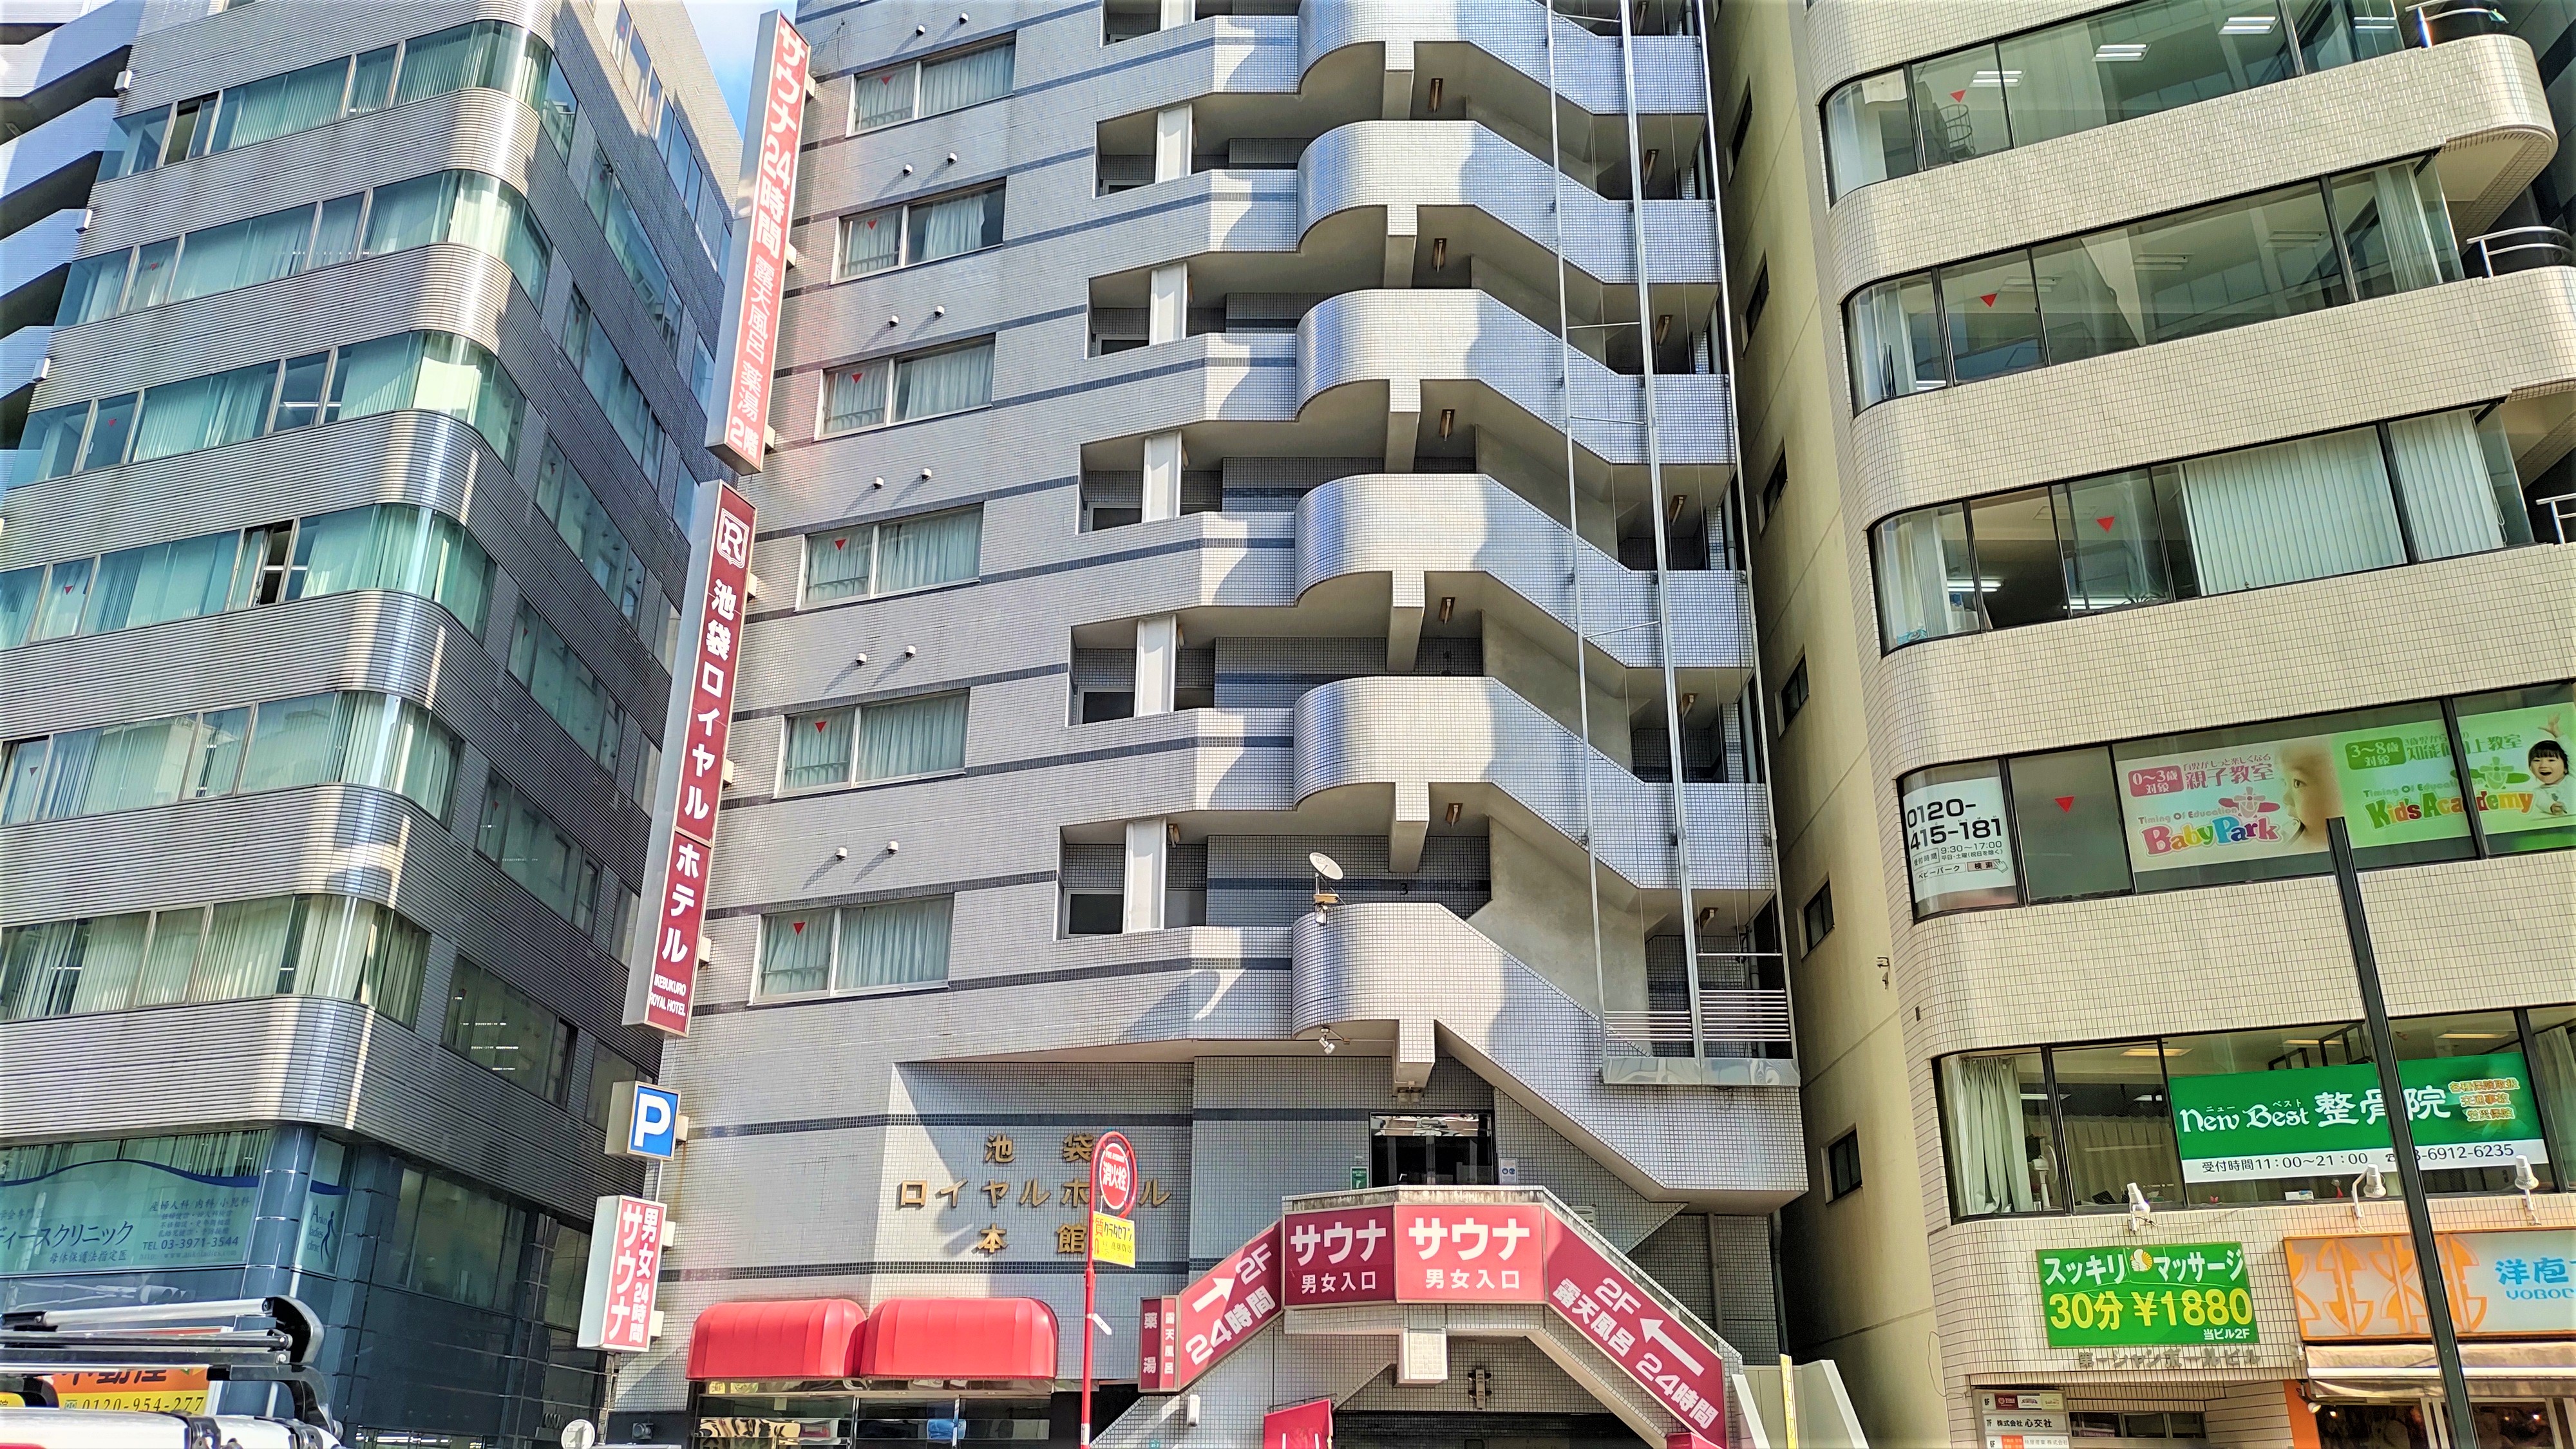 東京近くでご飯や風呂など贅沢な時間を過ごせるビジネスホテル